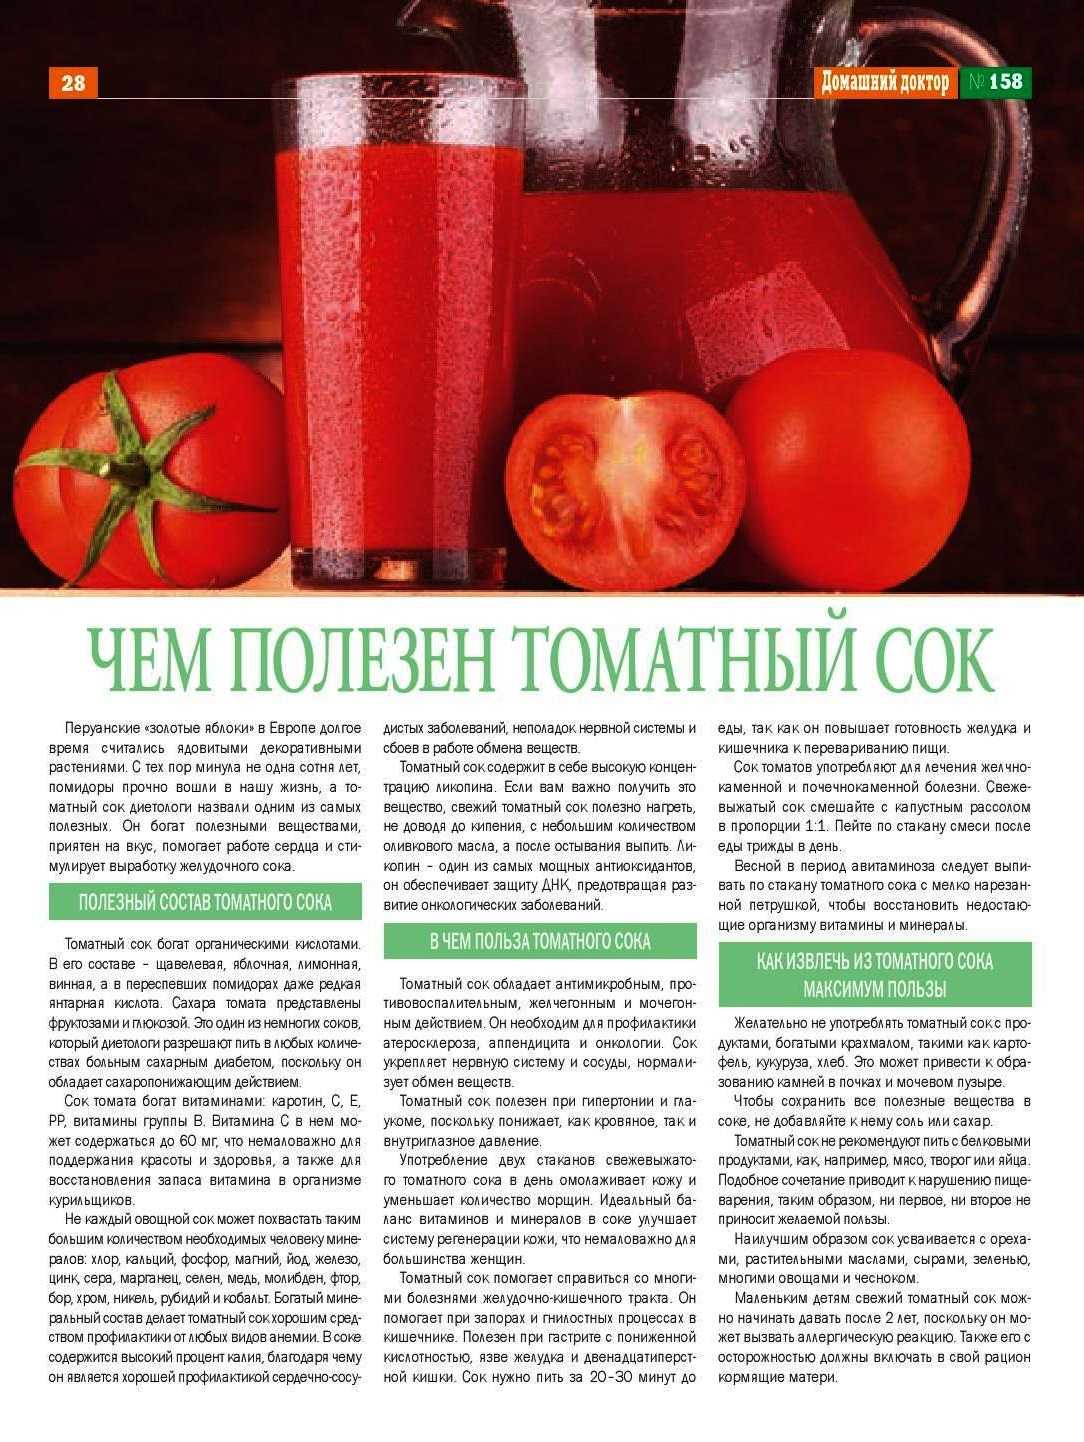 Сок при температуре можно. Чем полезен томатный сок. Чем полезен томатныысок. Чем полезен томатный сок для организма. Сок томатный полезный сок.